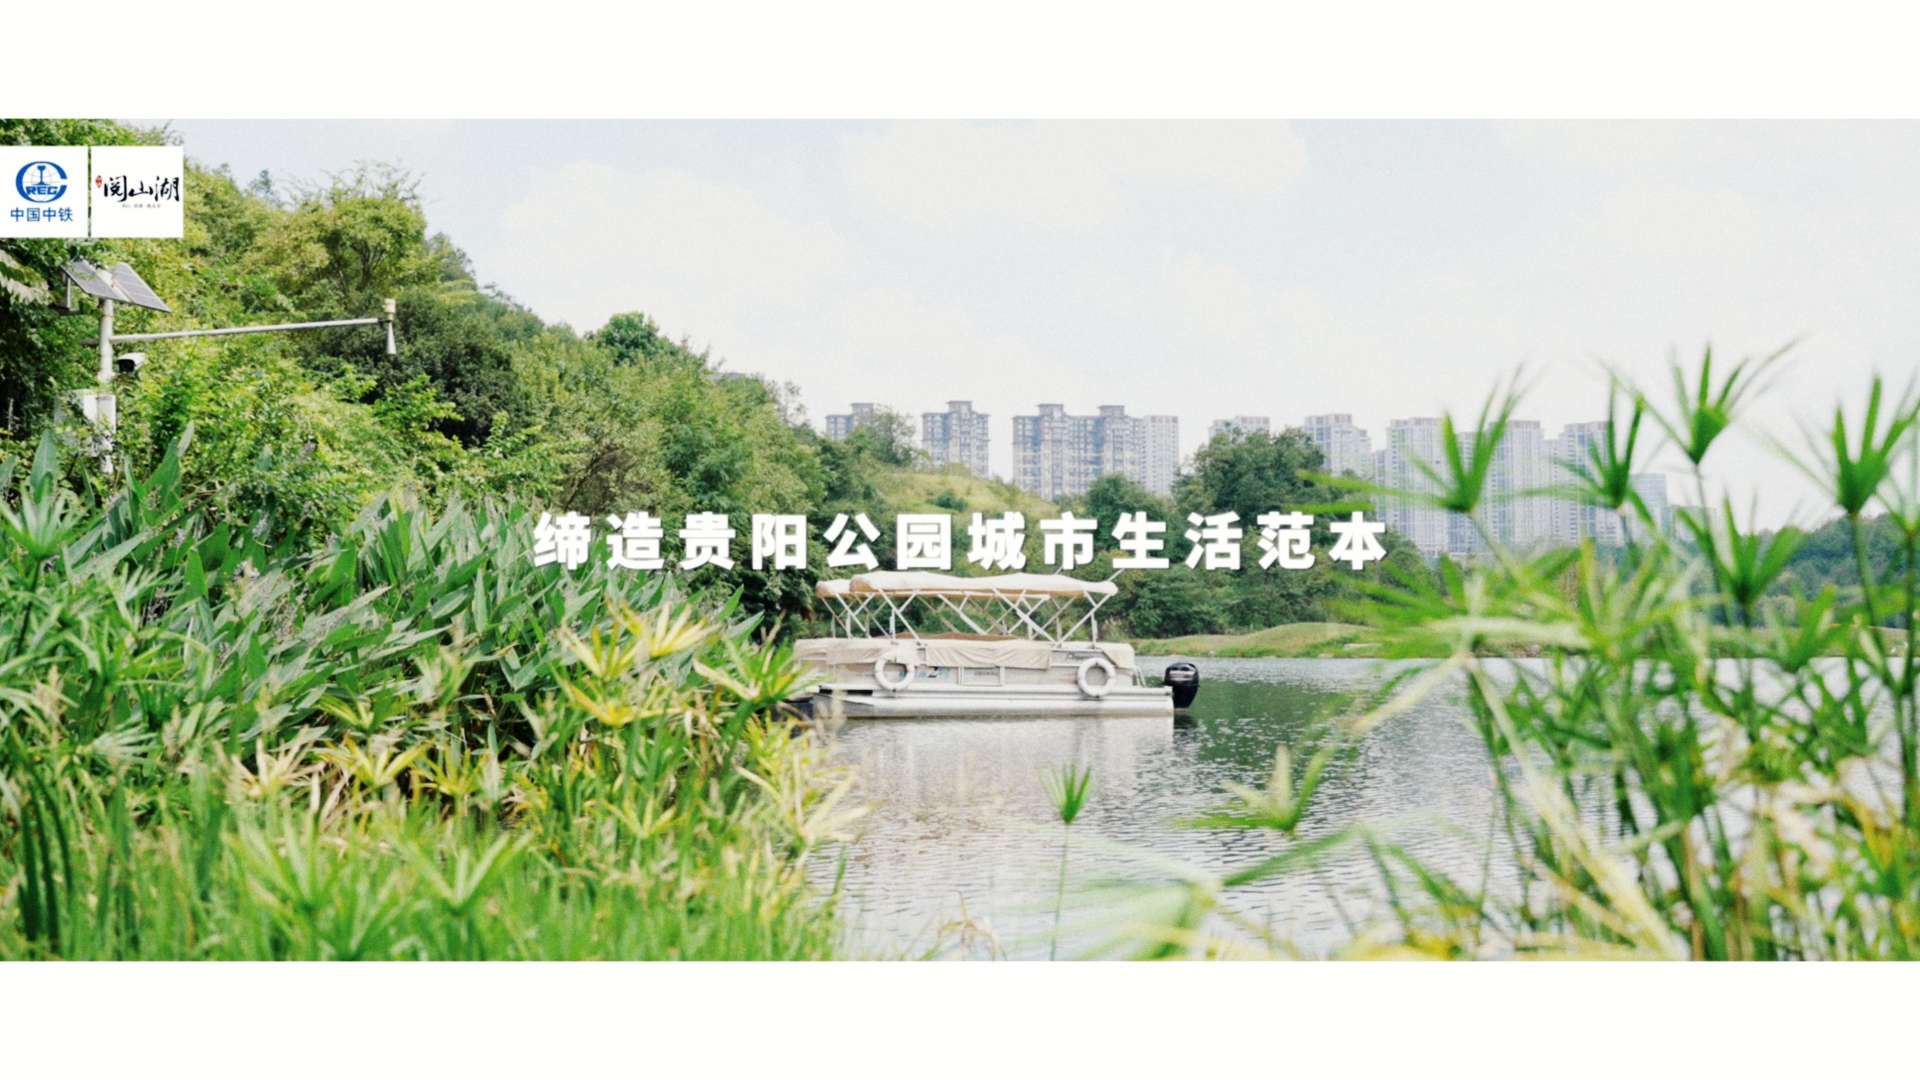 11.4阅山湖宣传片 第二版 10